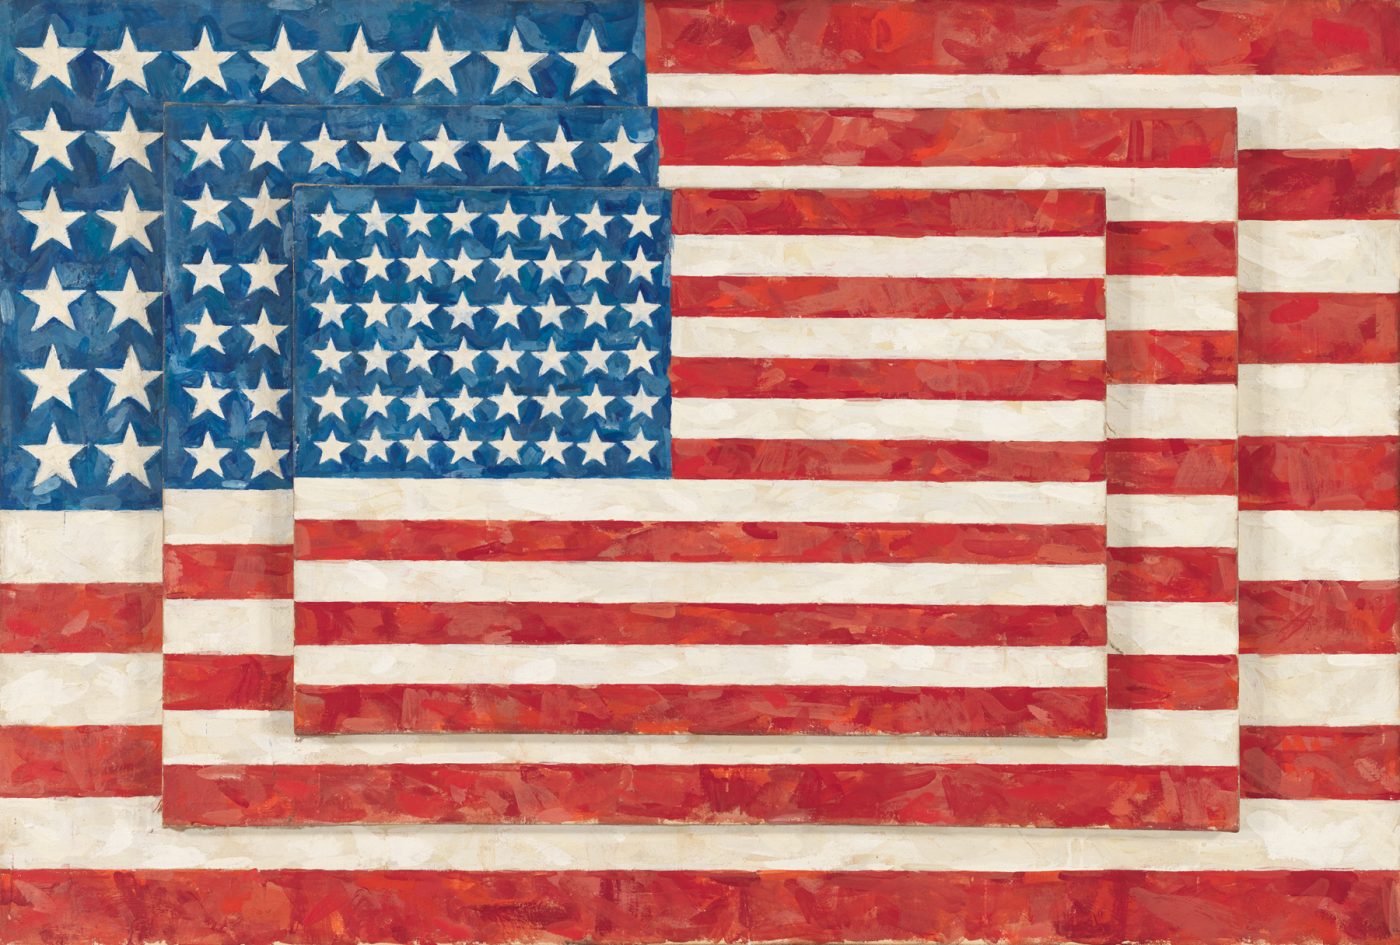 Jasper Johns: Three Flags, 1958